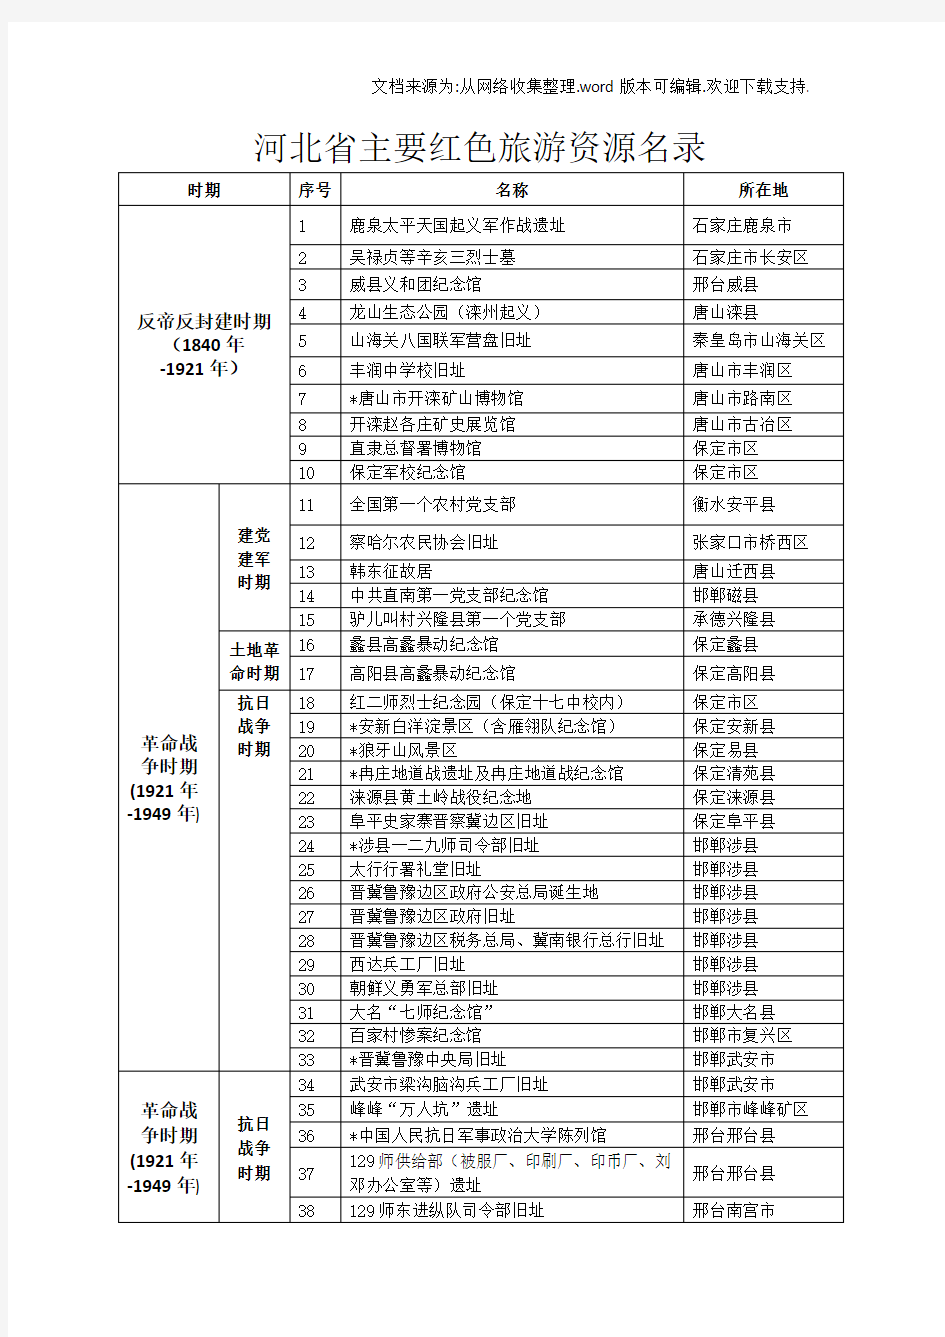 河北省主要红旅游资源名录